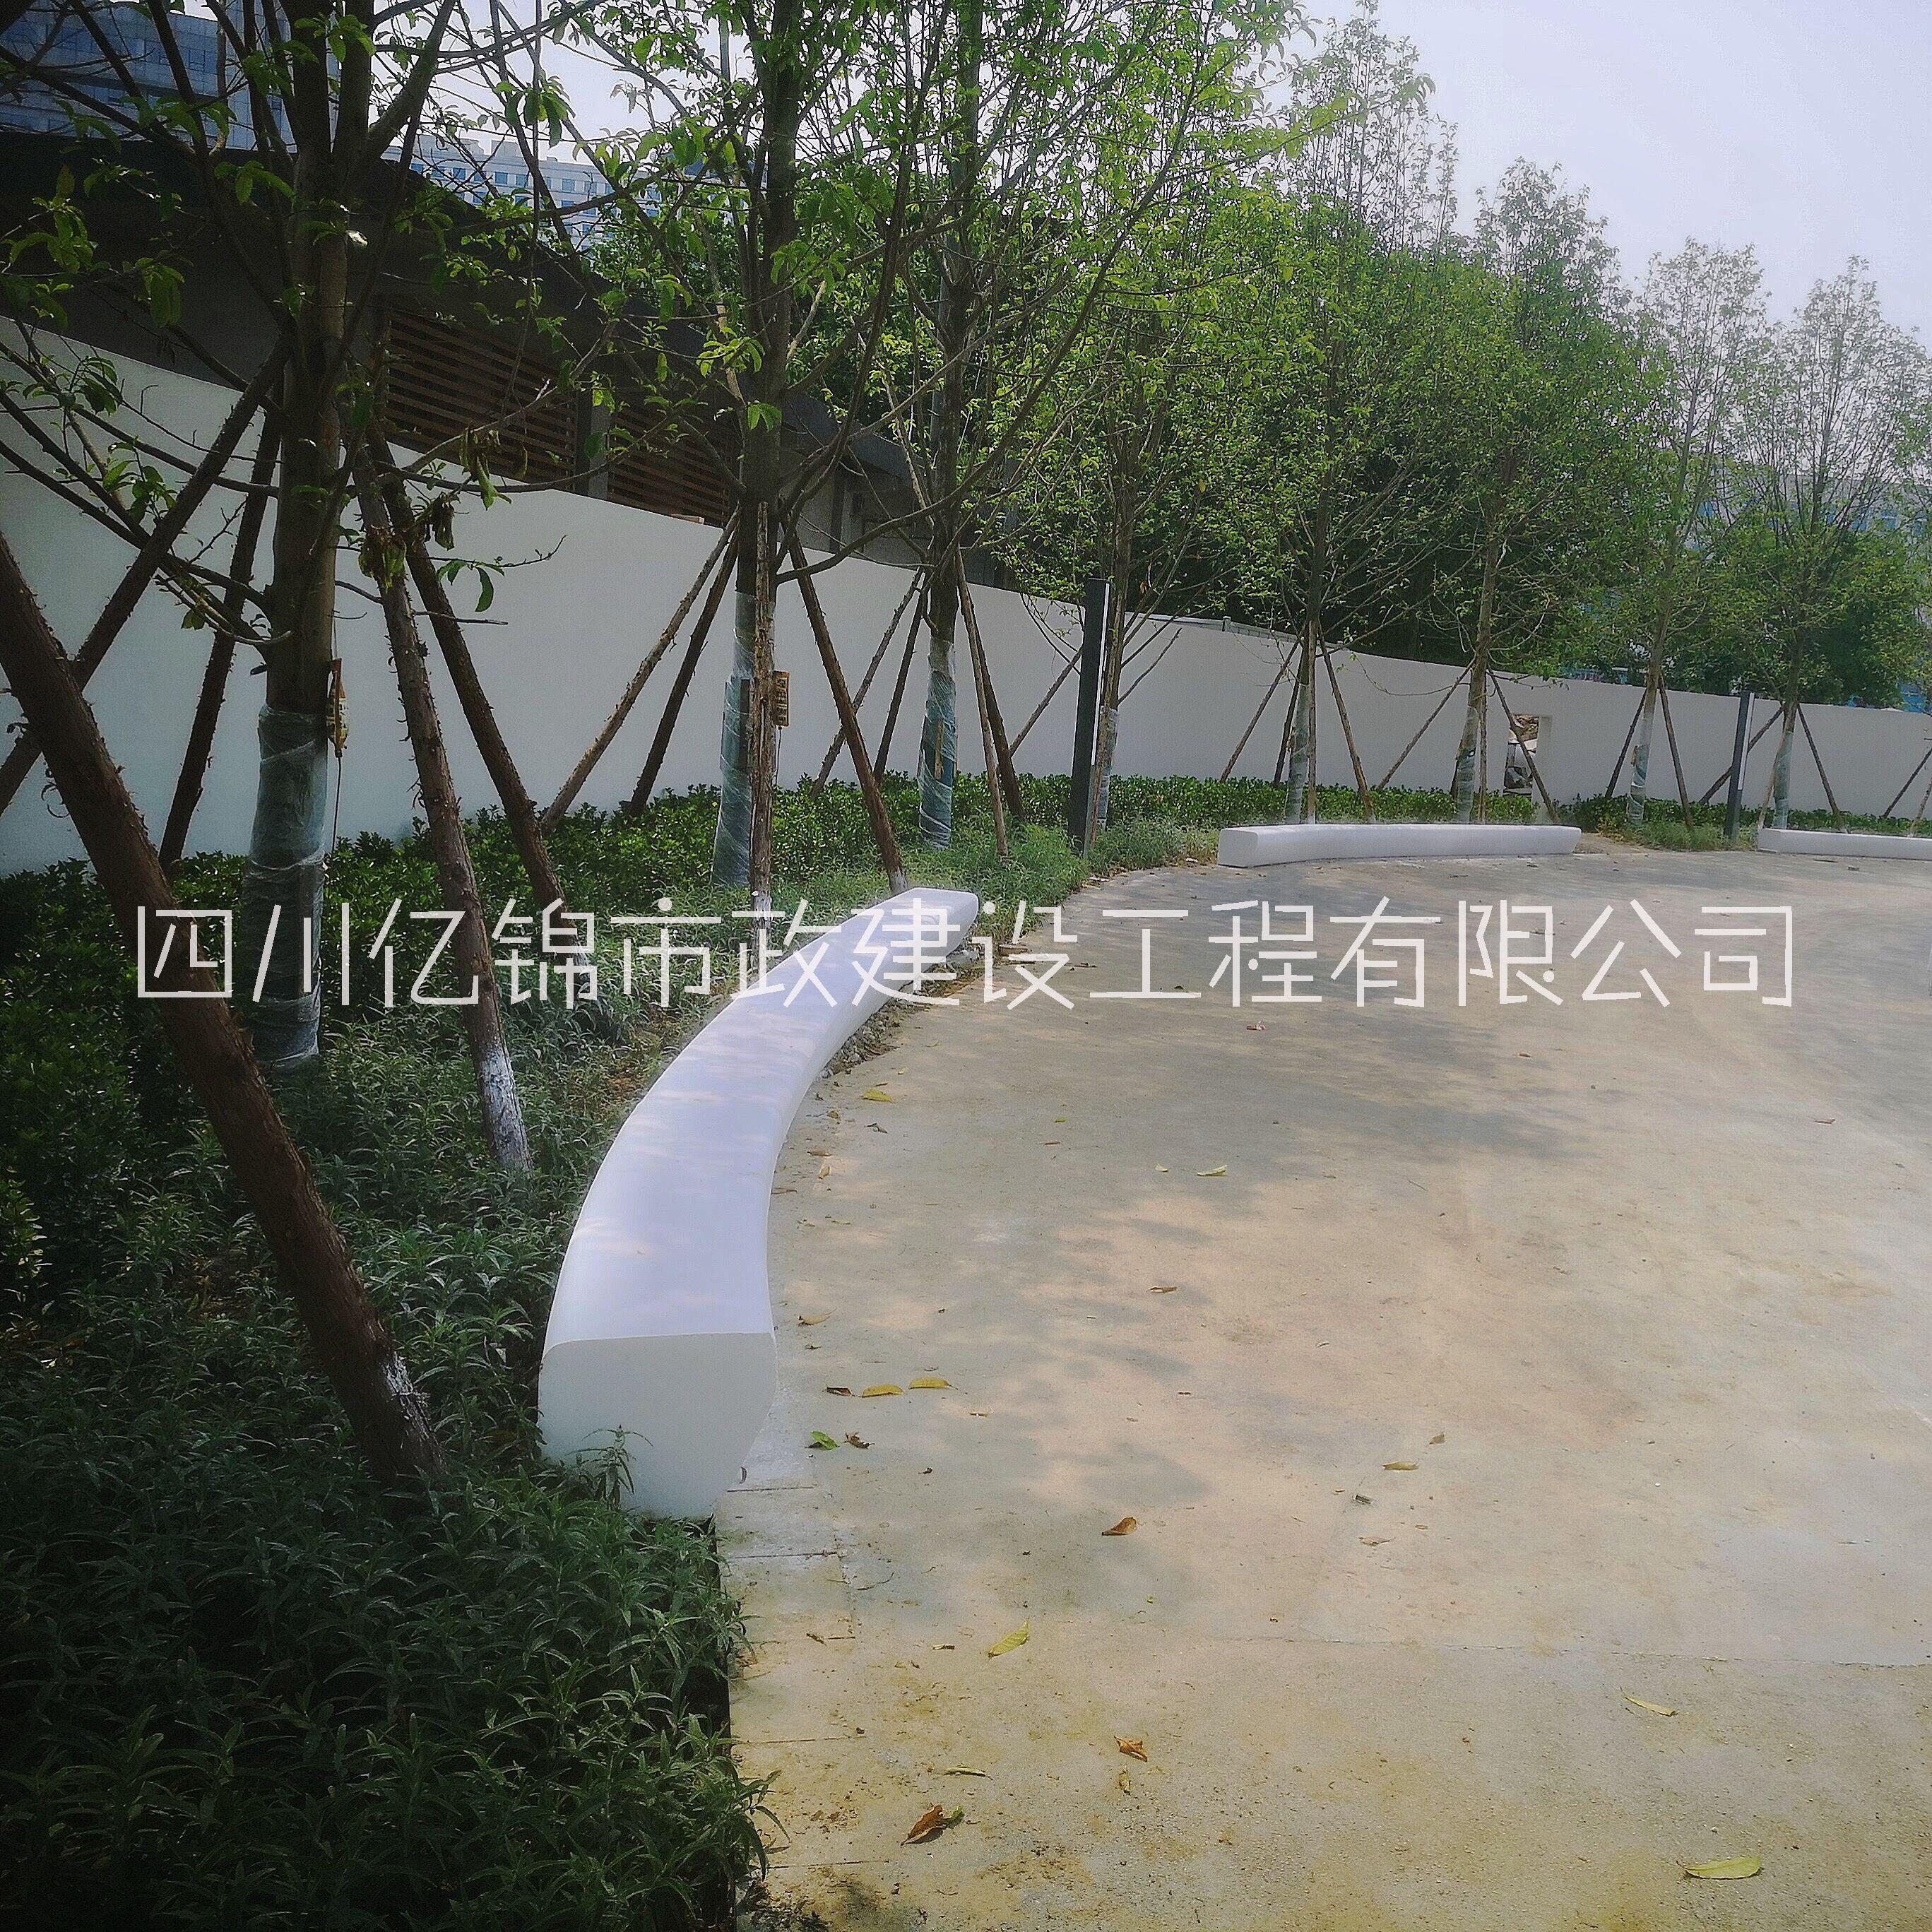 亿锦长条Y型GRC无机磨石清水混凝土景观座椅长凳成品树池花池安装施工图片